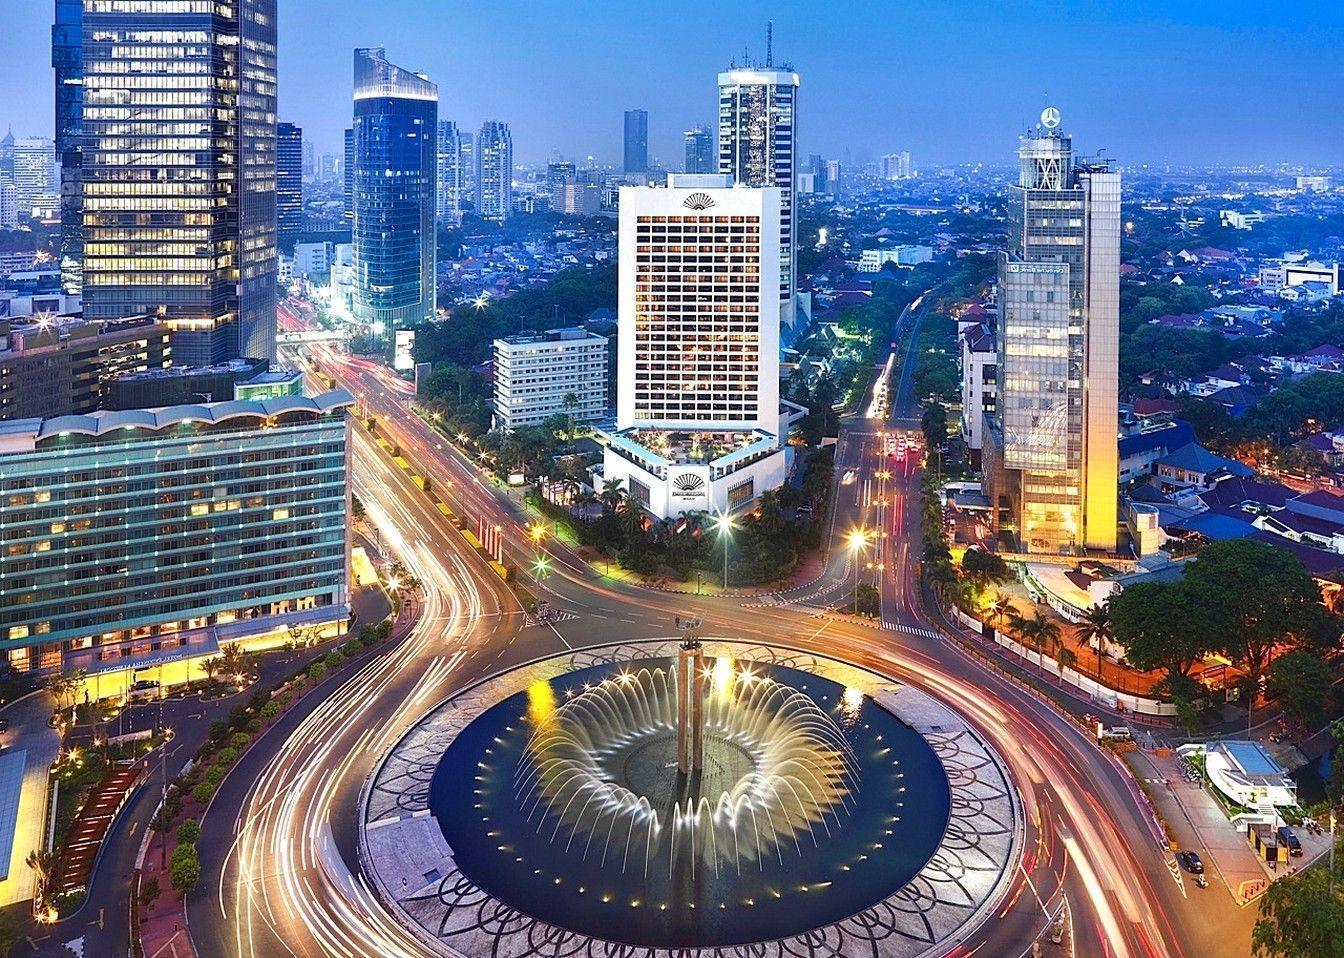 3141x1335px Jakarta (633.29 KB).07.2015